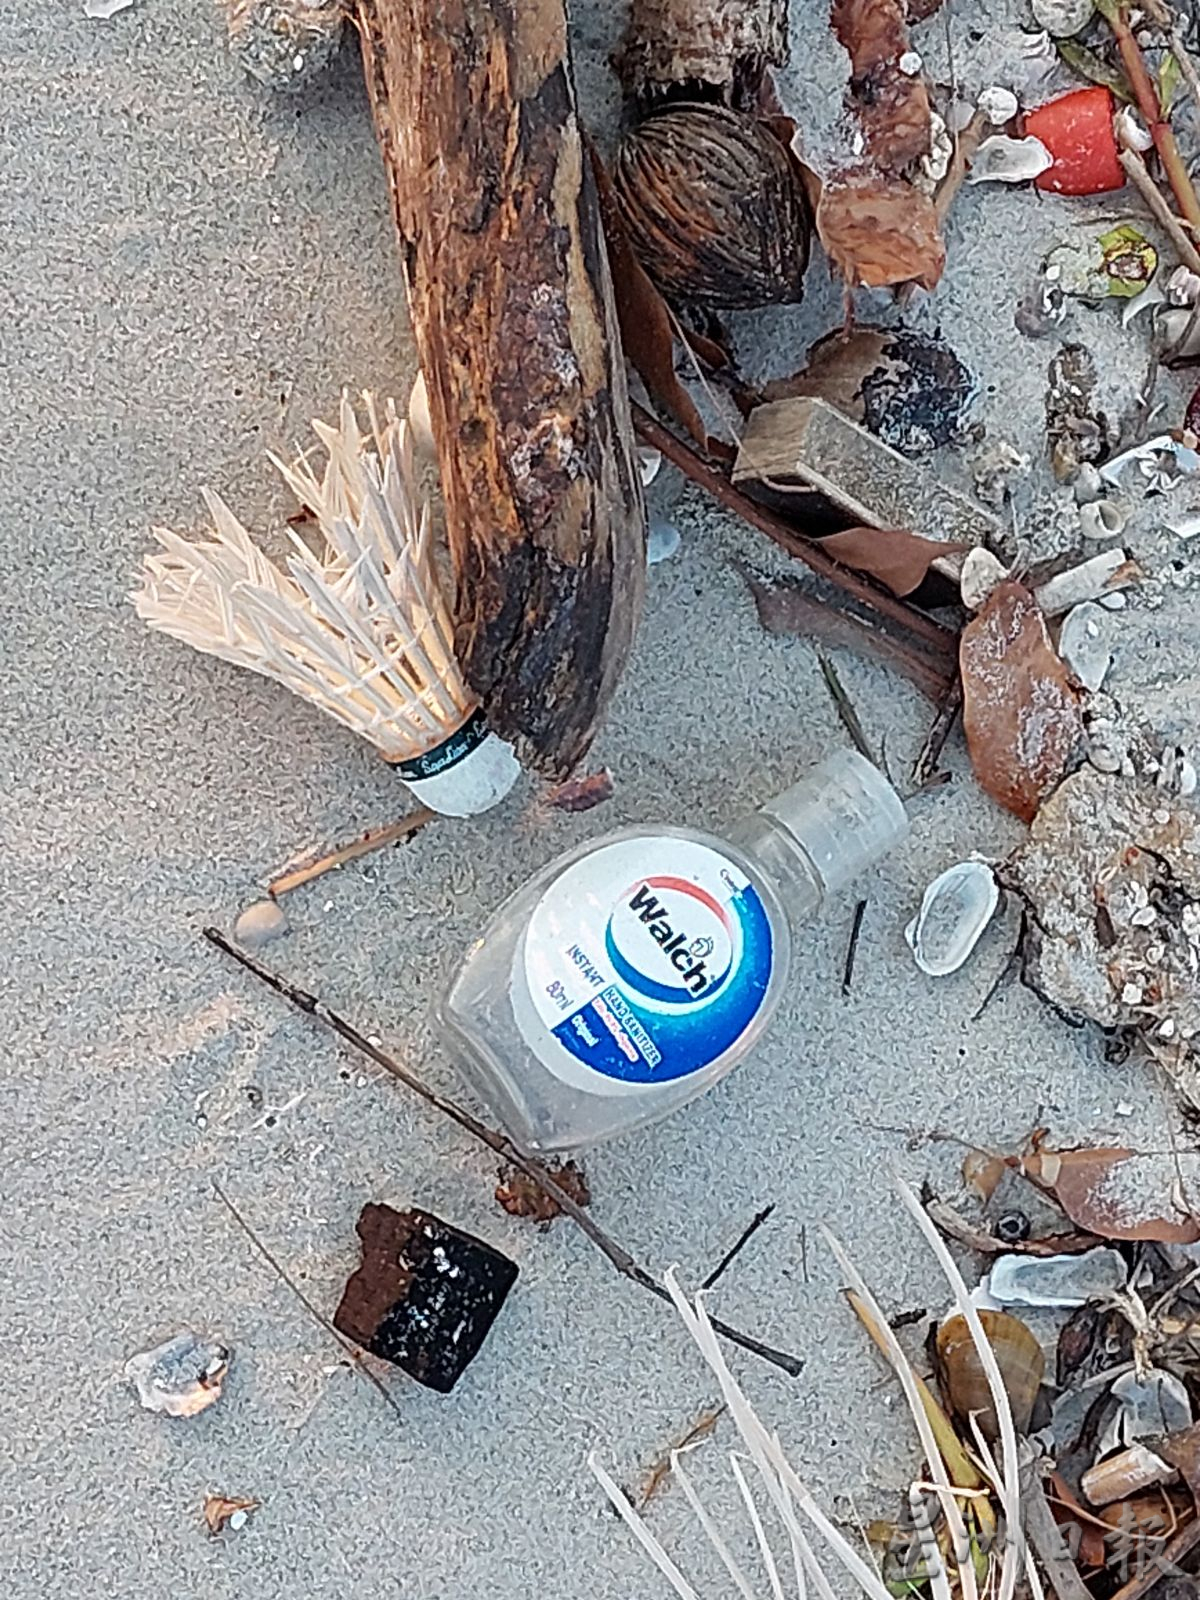 （古城第二版主文）海边留下塑料垃圾，最终使海洋生物及人类受到伤害